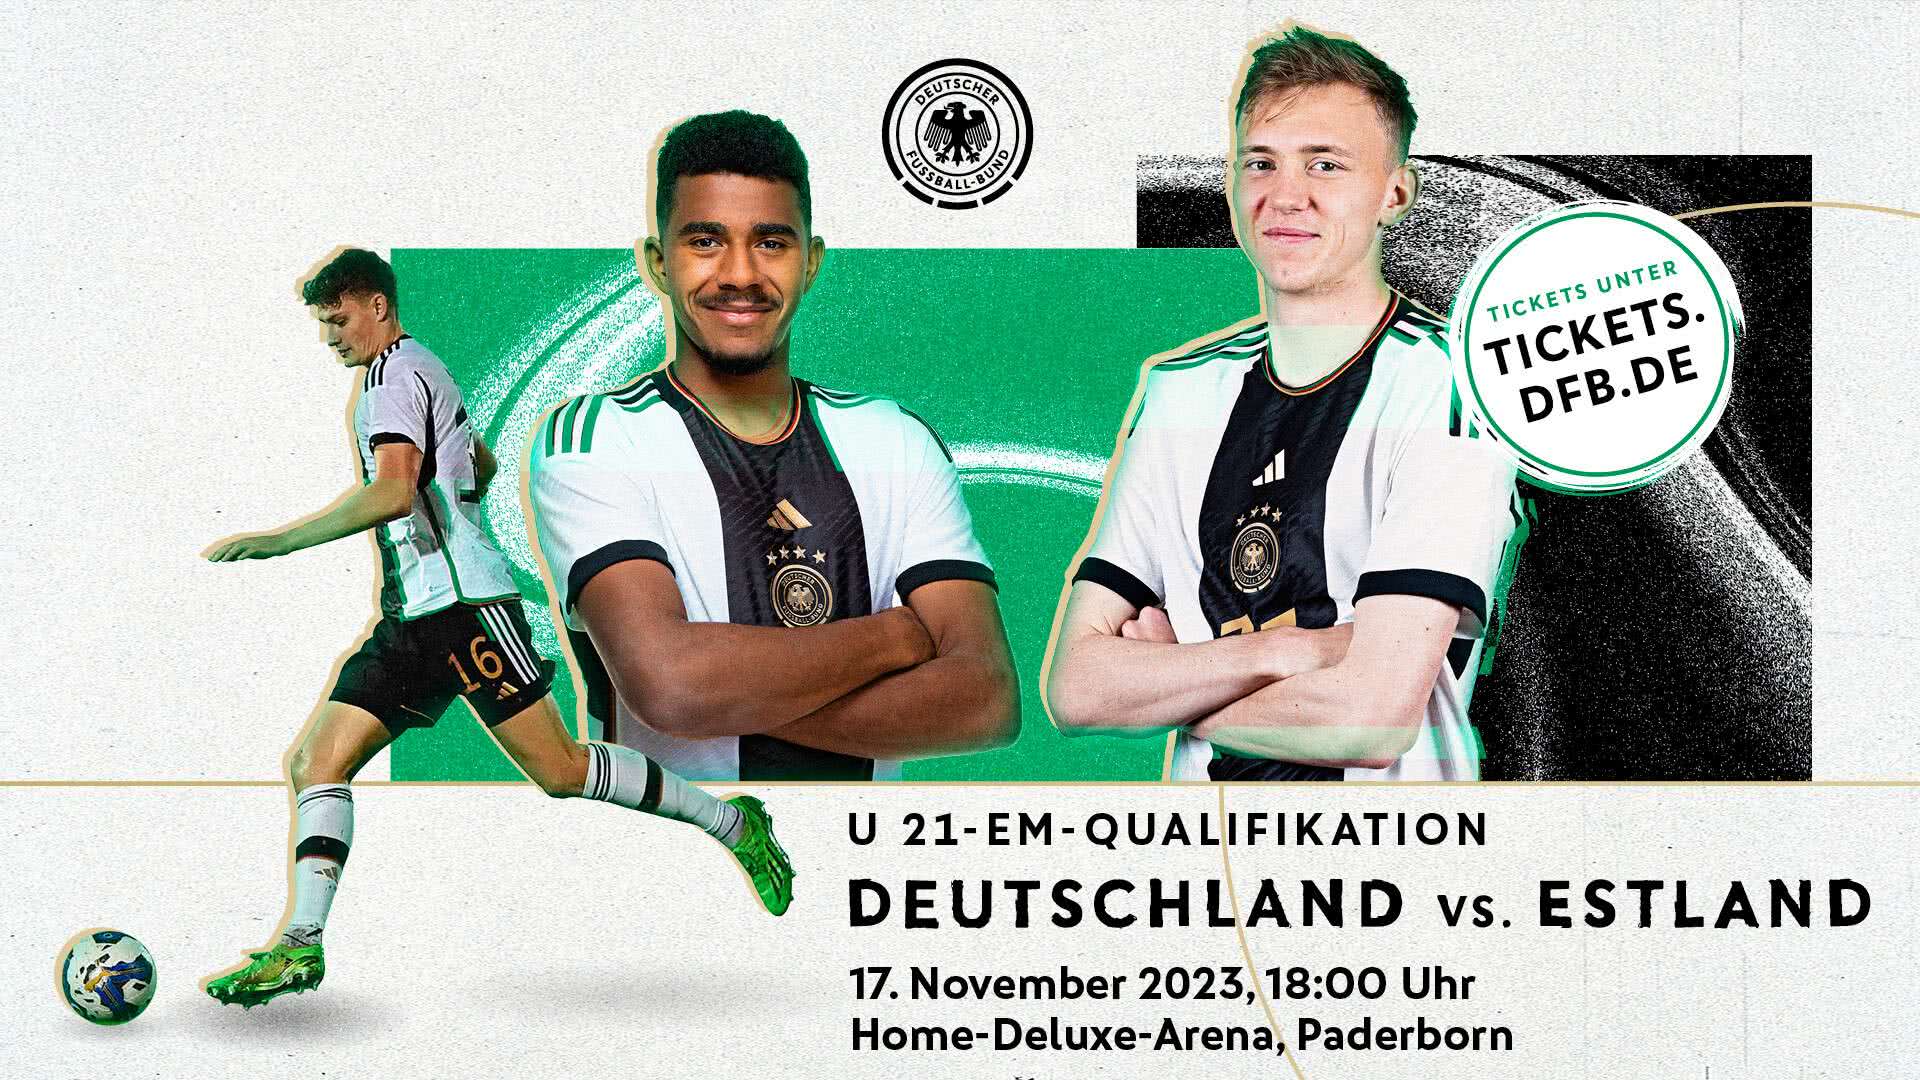 Tickets für U21-Länderspiel in Paderborn erhältlich